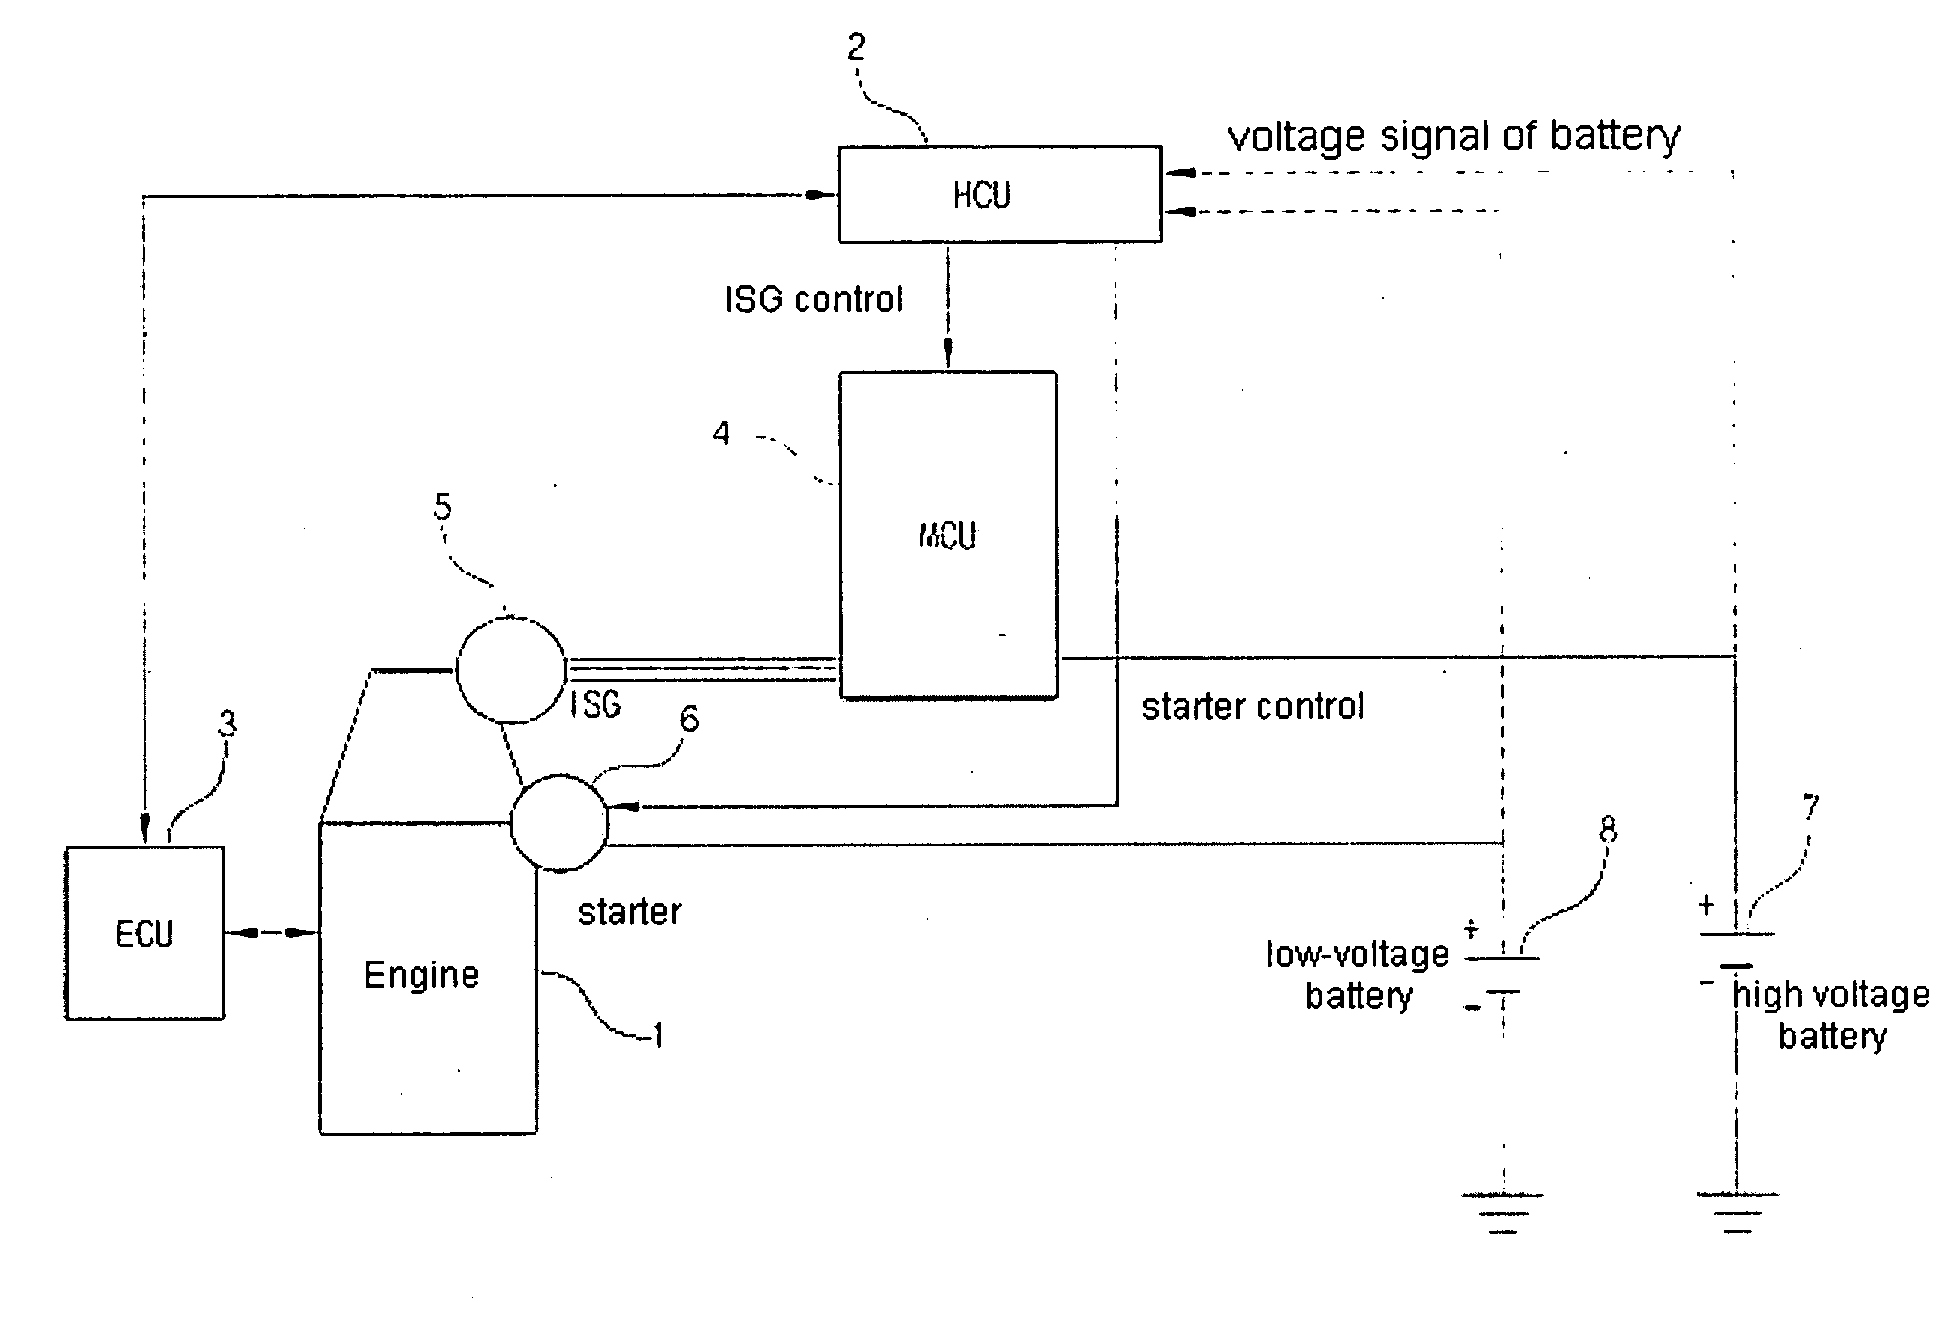 Engine start method of vehicle having starter motor and ISG